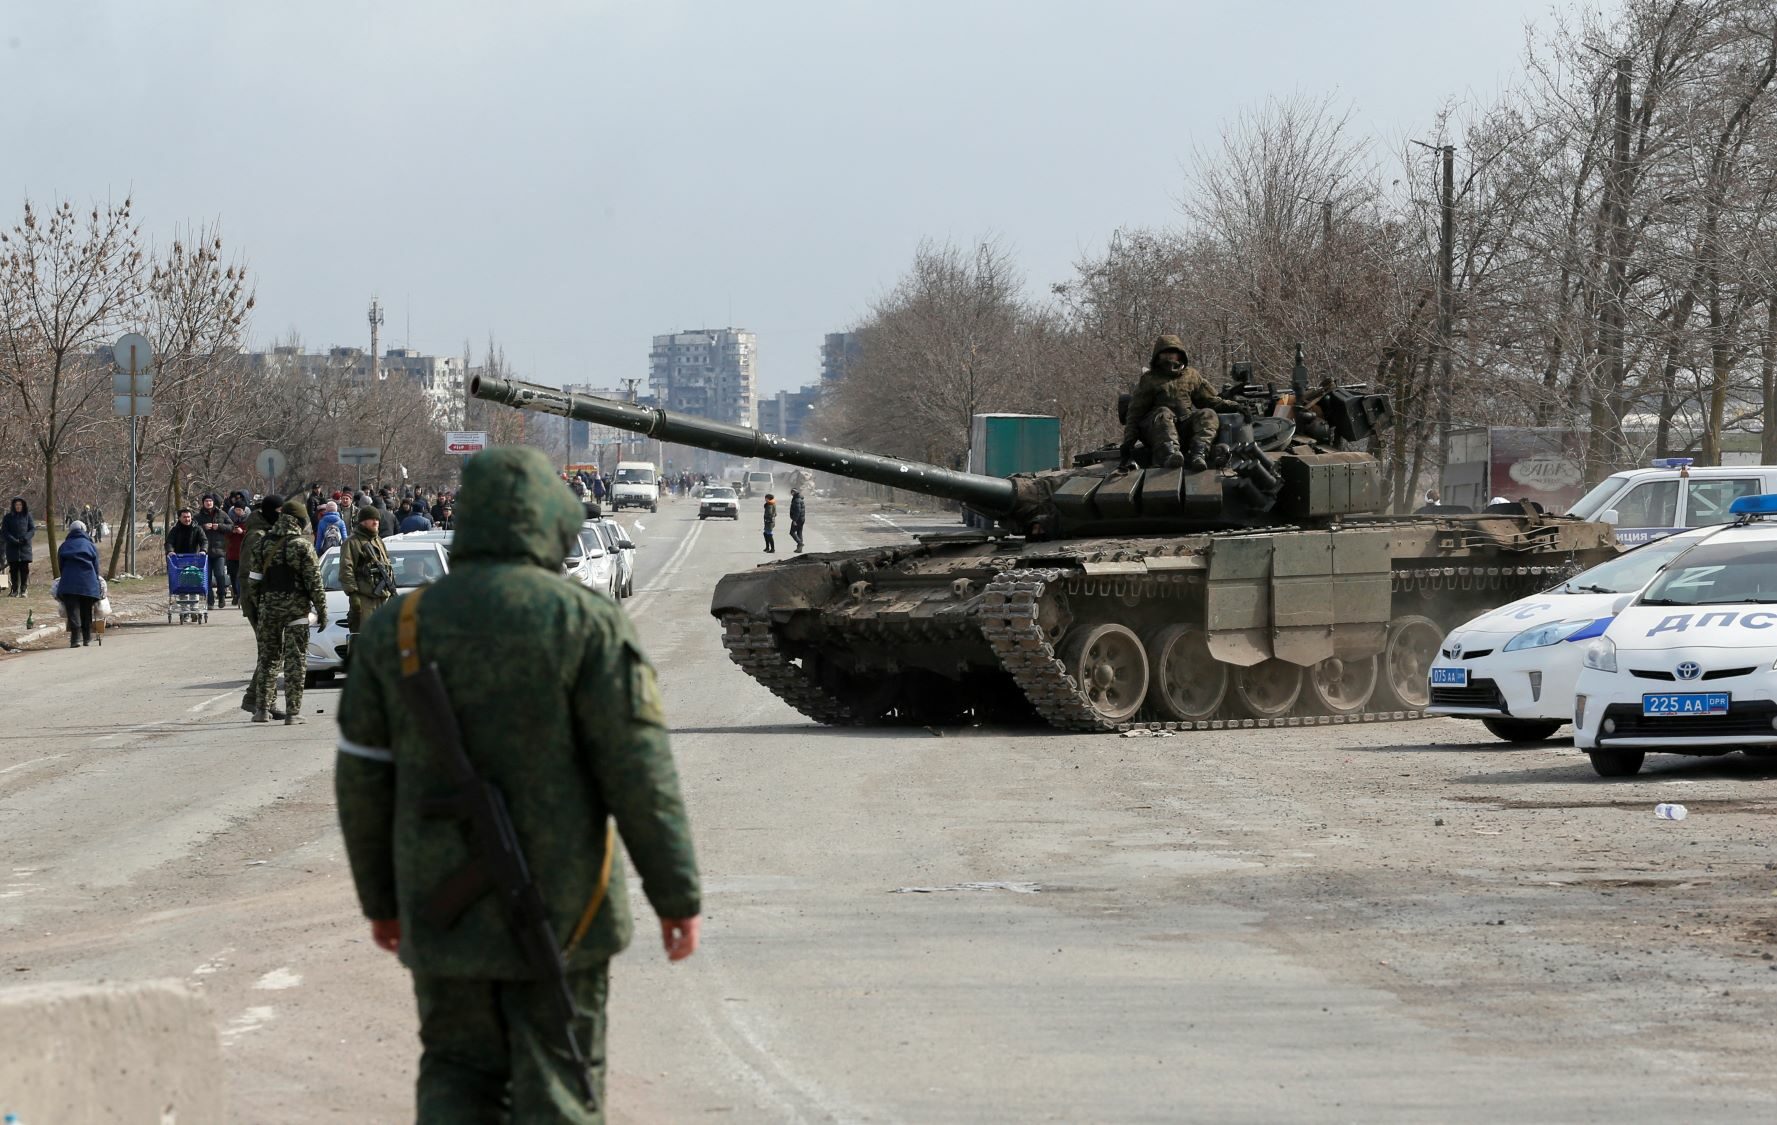 ทีมเจรจายูเครน-รัสเซีย ถกสันติภาพต่อ รองนายกฯเคียฟเผย สถานการณ์ในมารีอูปอลสุดลำบาก